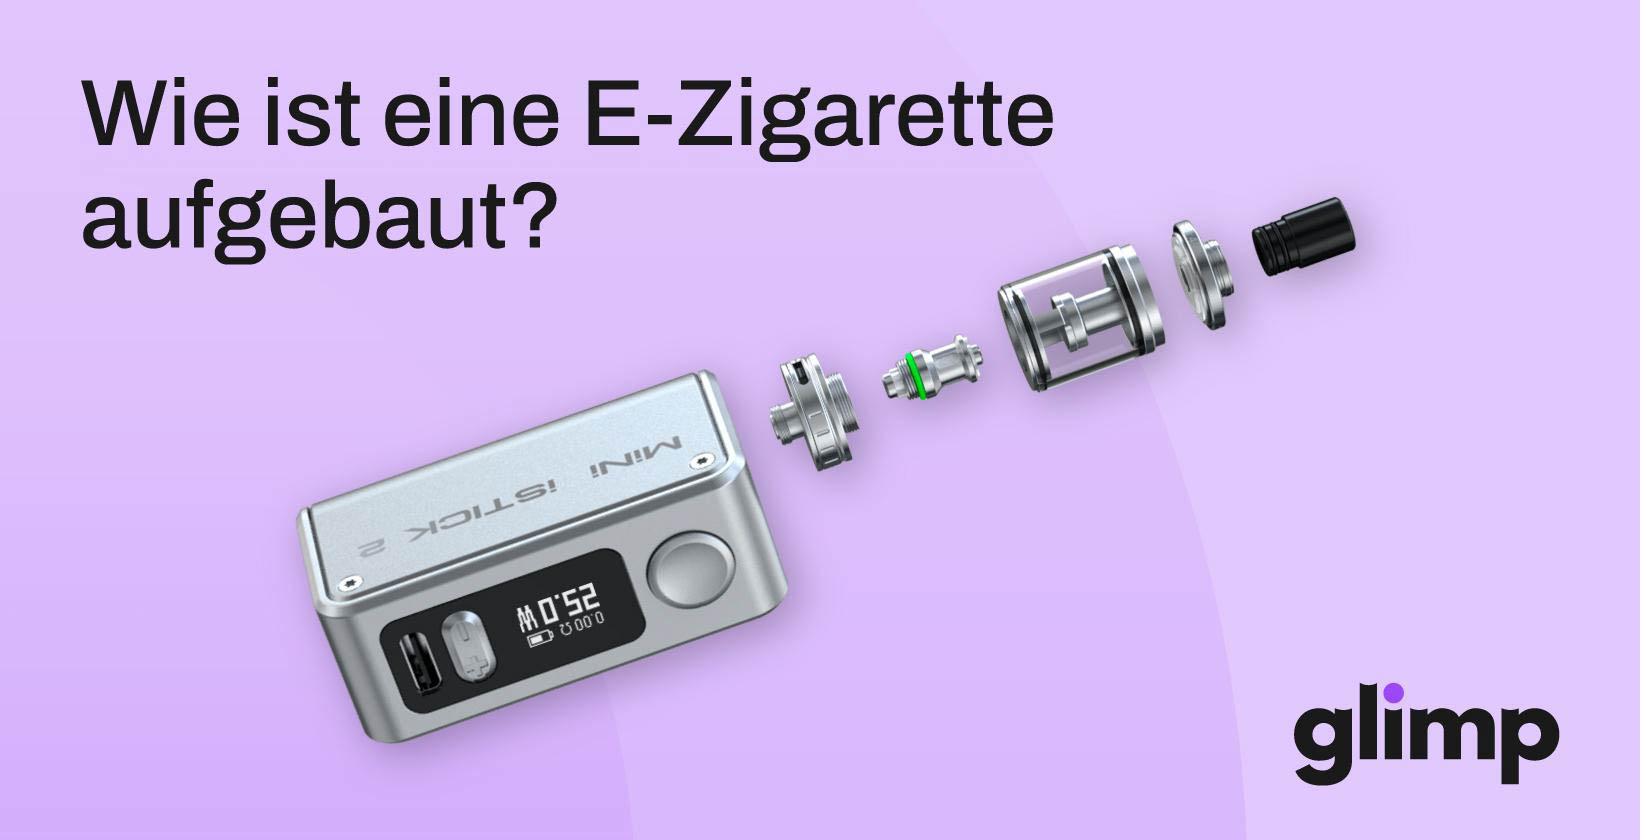 Aufbau der E-Zigarette: Was sind die E-Zigarette Komponenten?